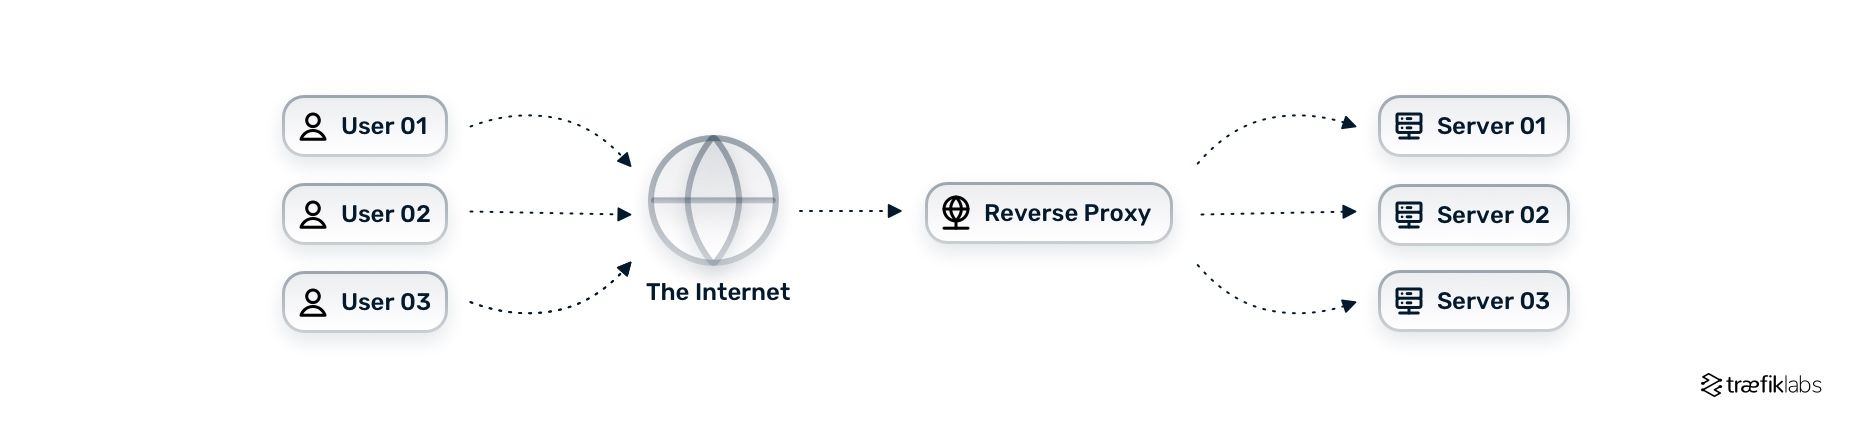 reverse proxy architecture diagram